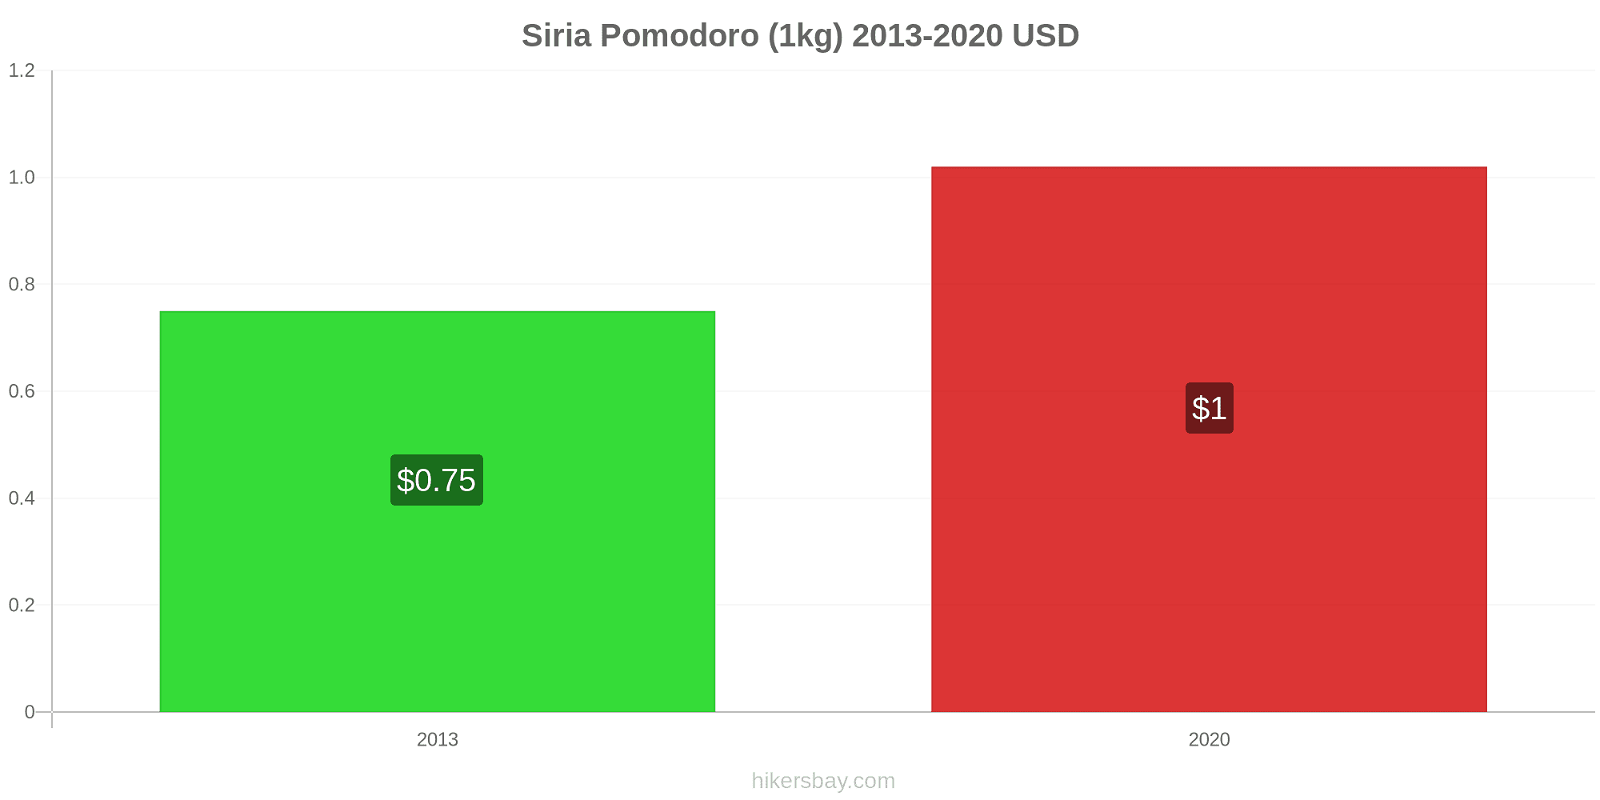 Siria variazioni di prezzo Pomodoro (1kg) hikersbay.com